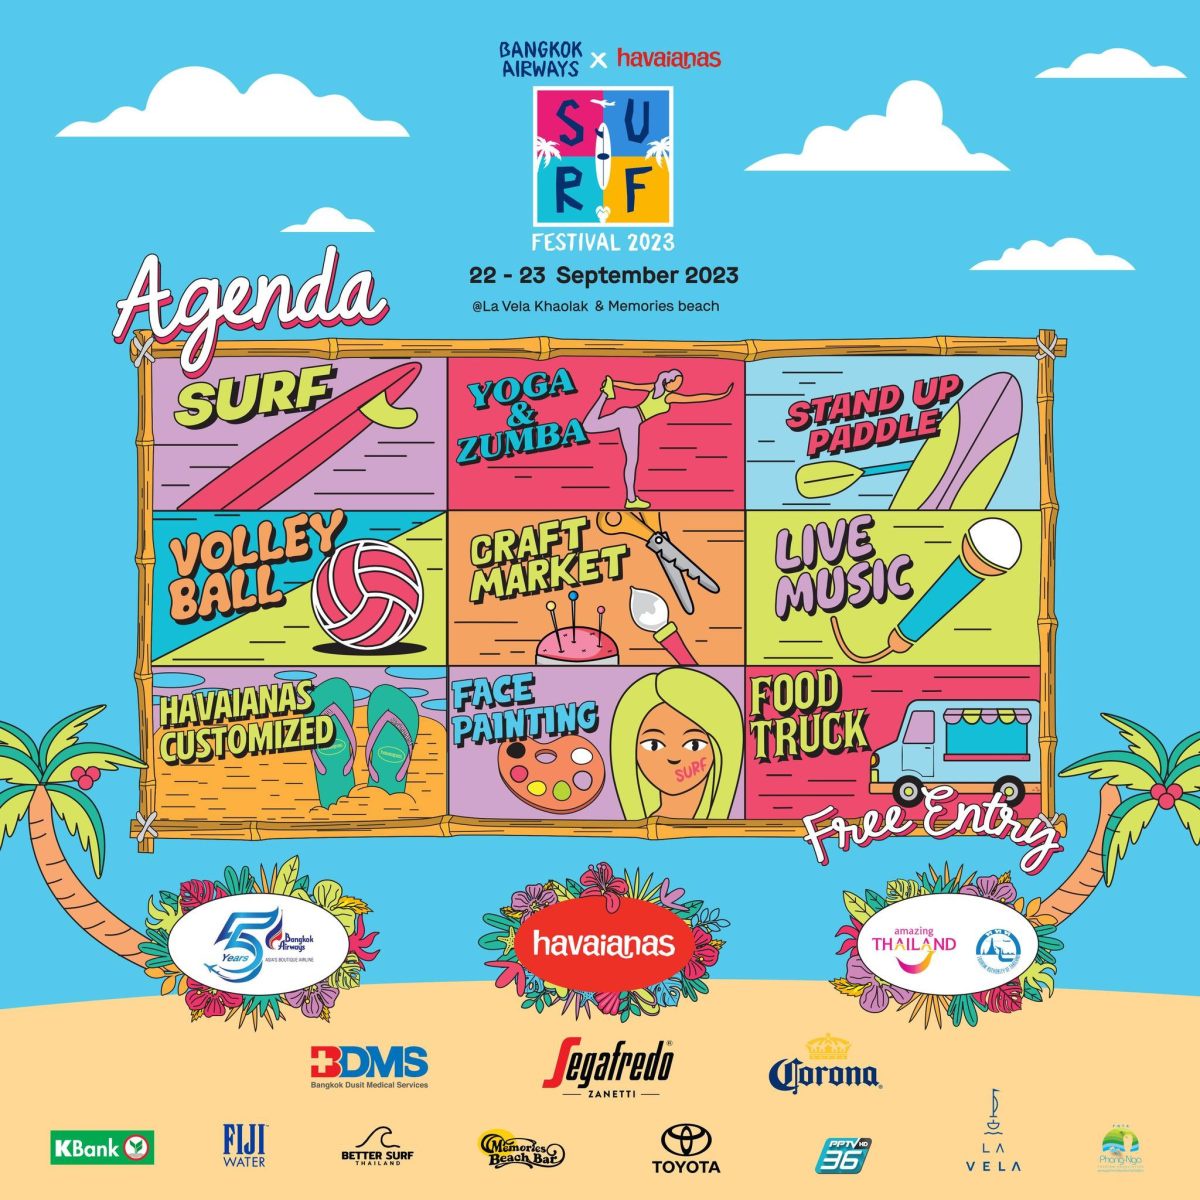 บางกอกแอร์เวย์ส ชวนคนรักกีฬาเอ็กซ์ตรีม สัมผัสประสบการณ์ความสนุกในงาน Bangkok Airways x Havaianas Surf Festival 2023 22 - 23